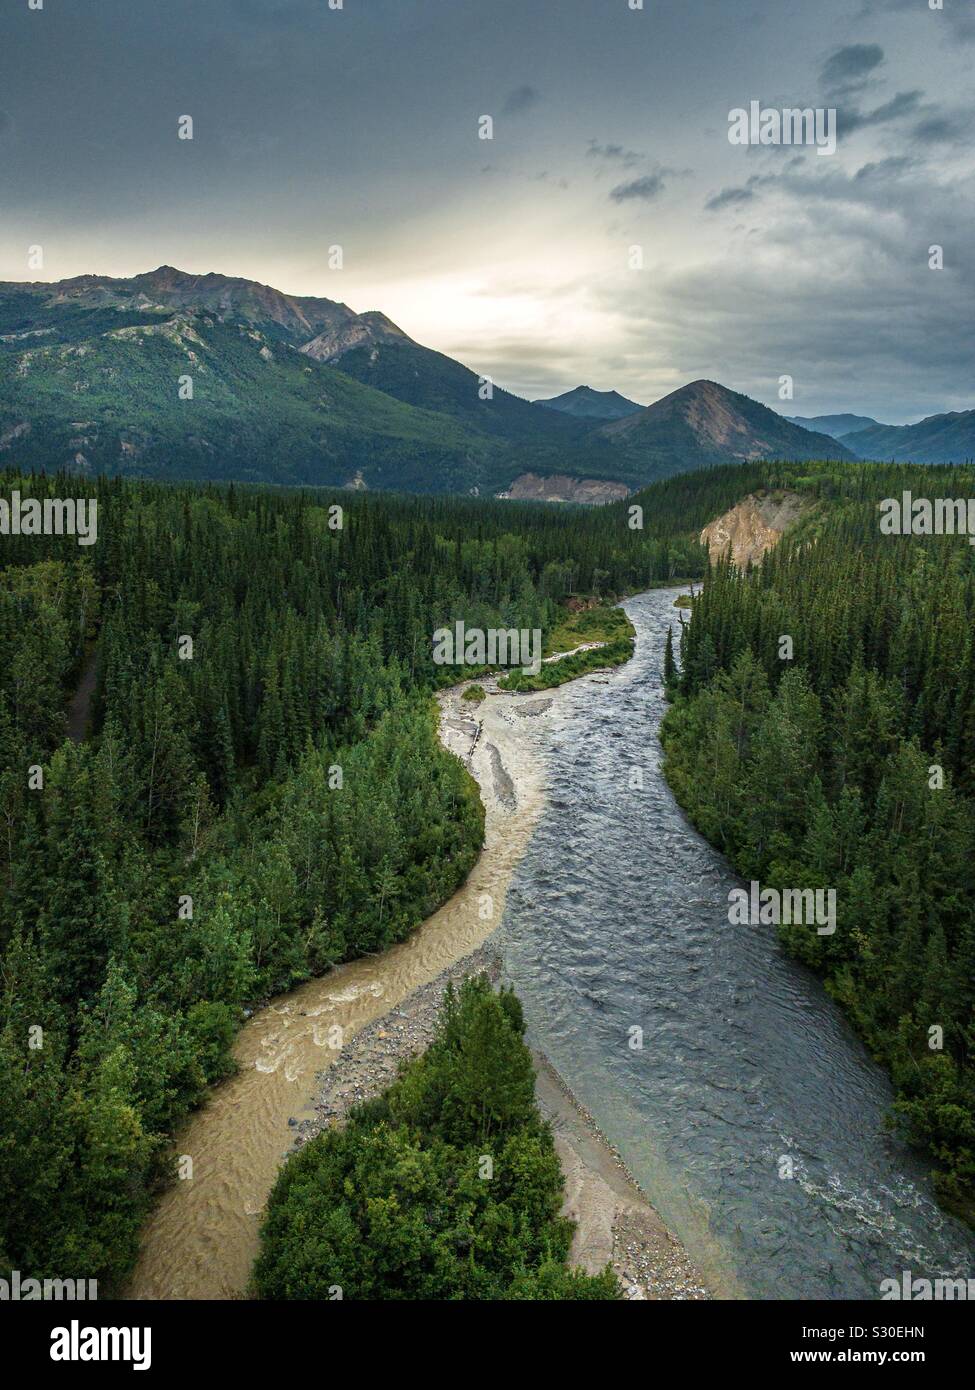 A river runs through Denali National Park in Alaska Stock Photo